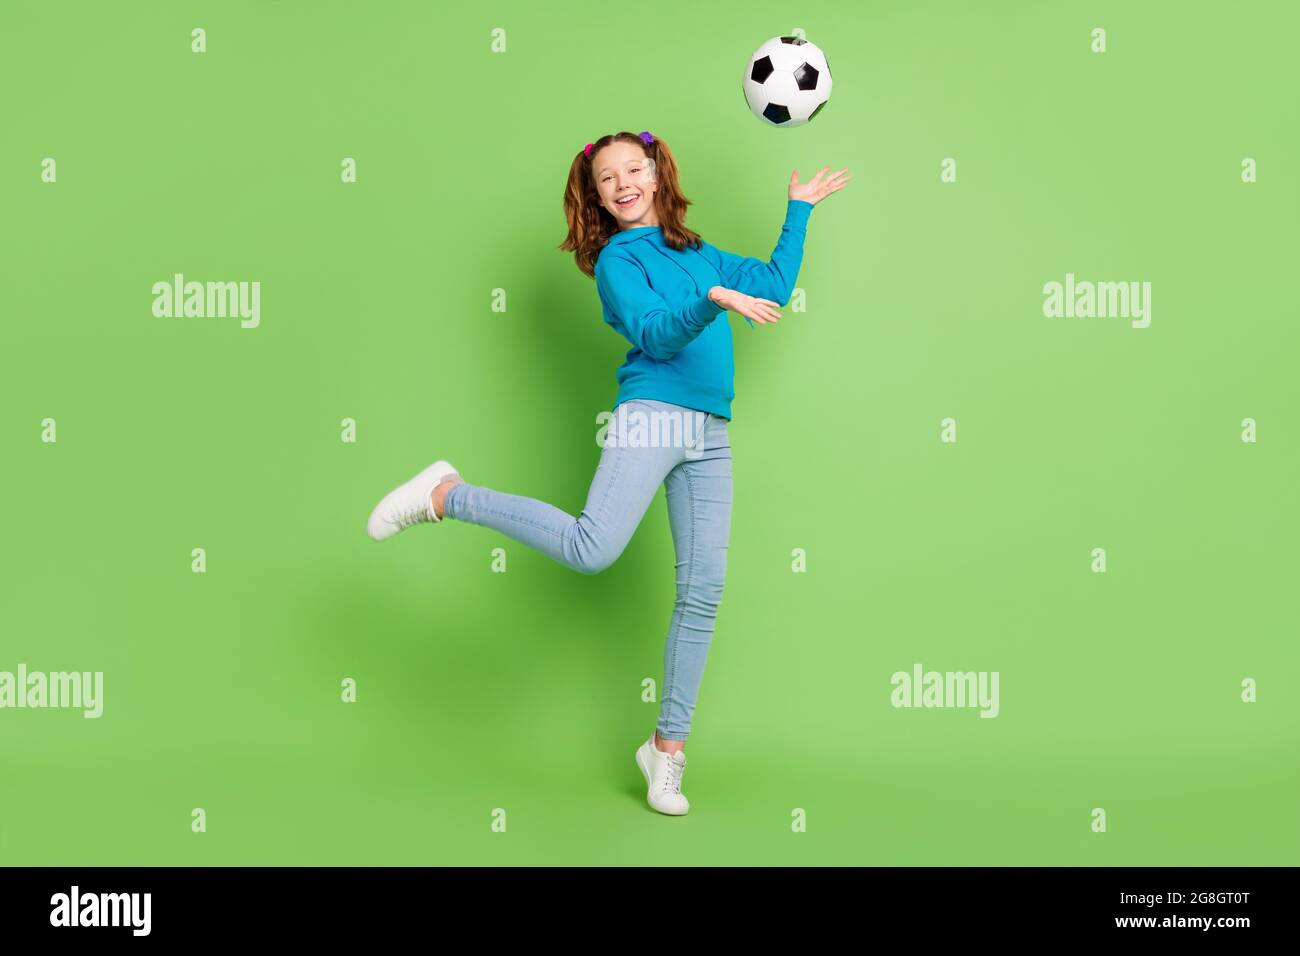 Foto in voller Größe von Brünette Pferdeschwanz behaart kleines Mädchen fliegen Fußball sportive isoliert auf glänzendes grünes Farbe Hintergrund Stockfoto